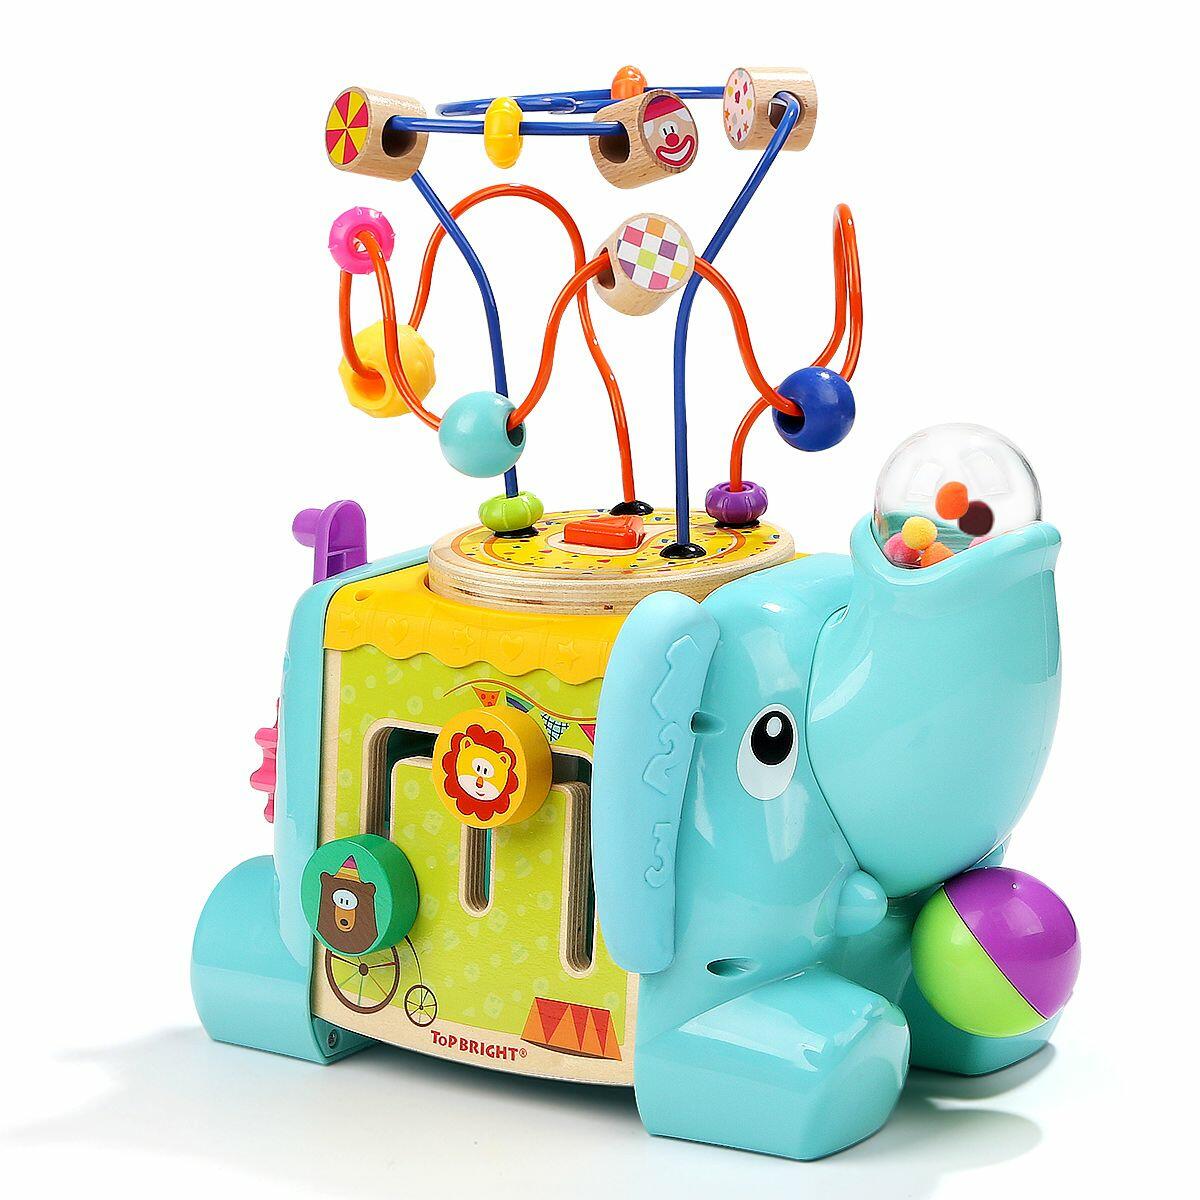 Centru de activitati 5 in 1 - Elefantel PlayLearn Toys